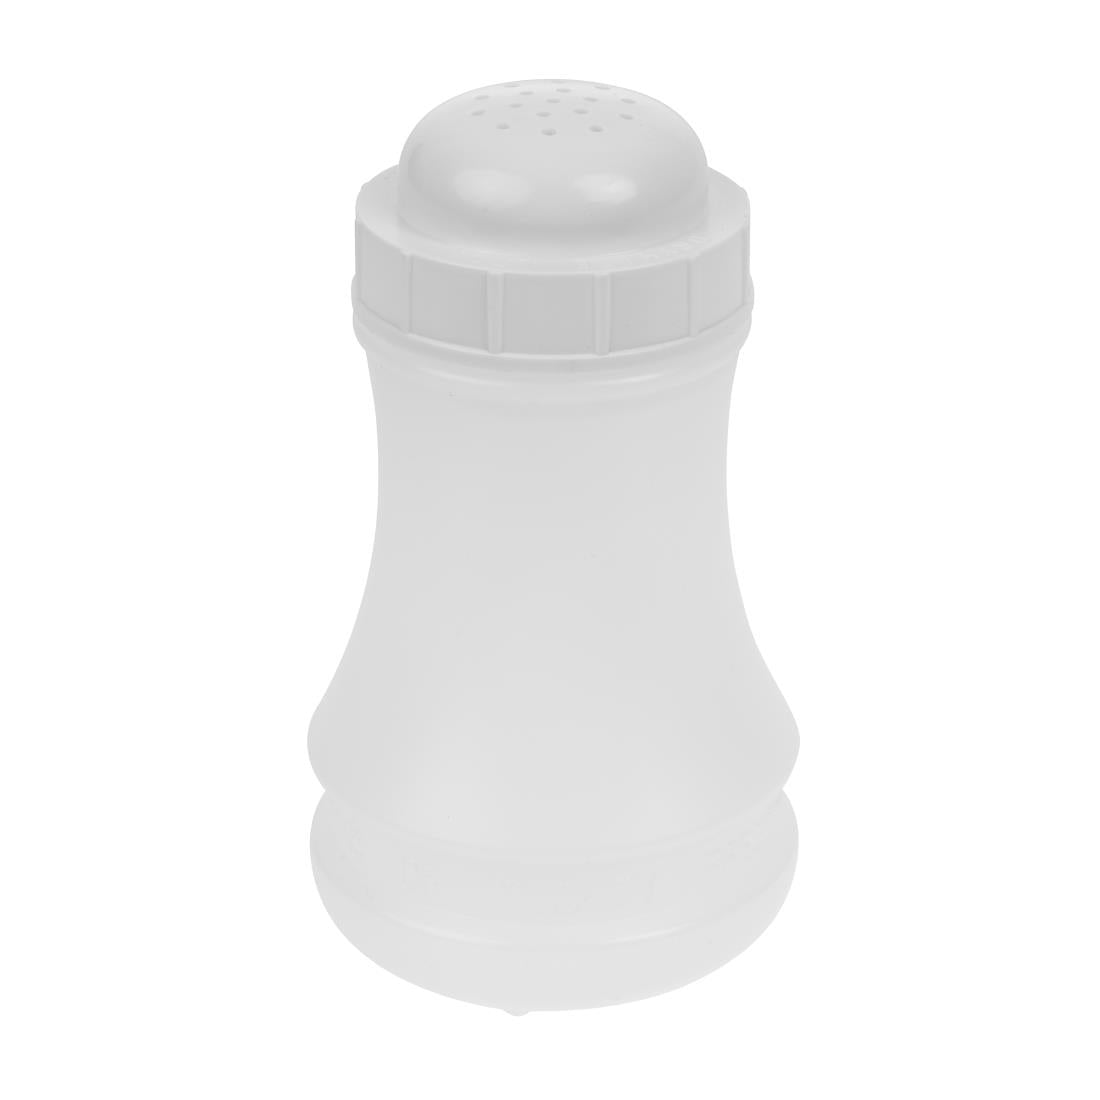 S469 Plastic Salt Shaker